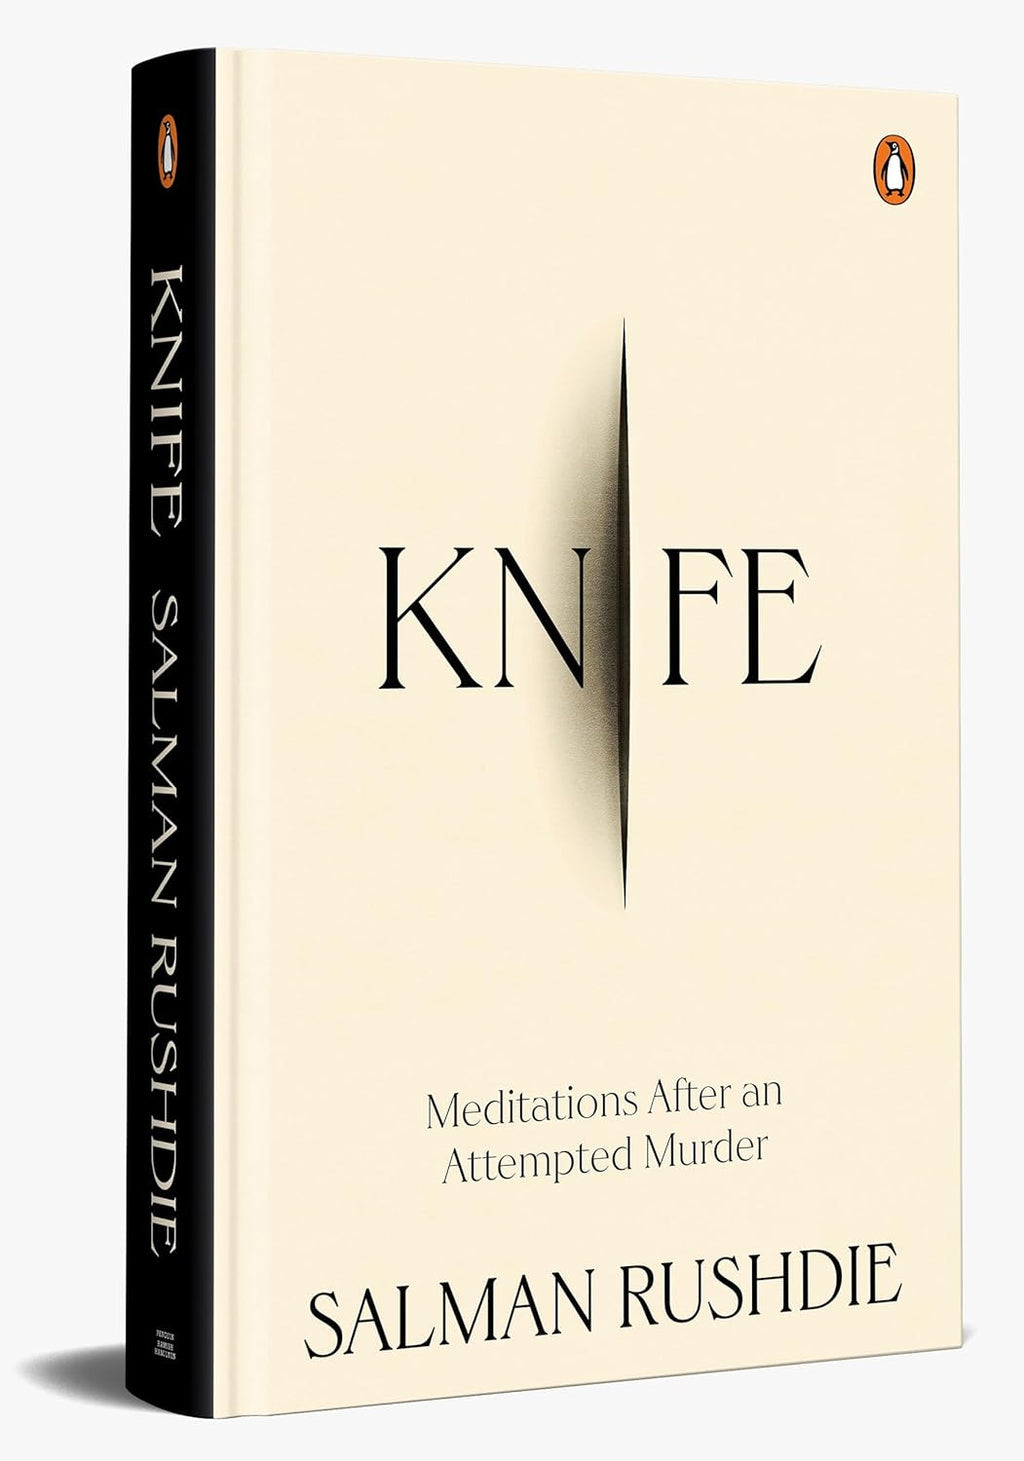 Knife by Salman Rushdie at BIBLIONEPAL Bookstore